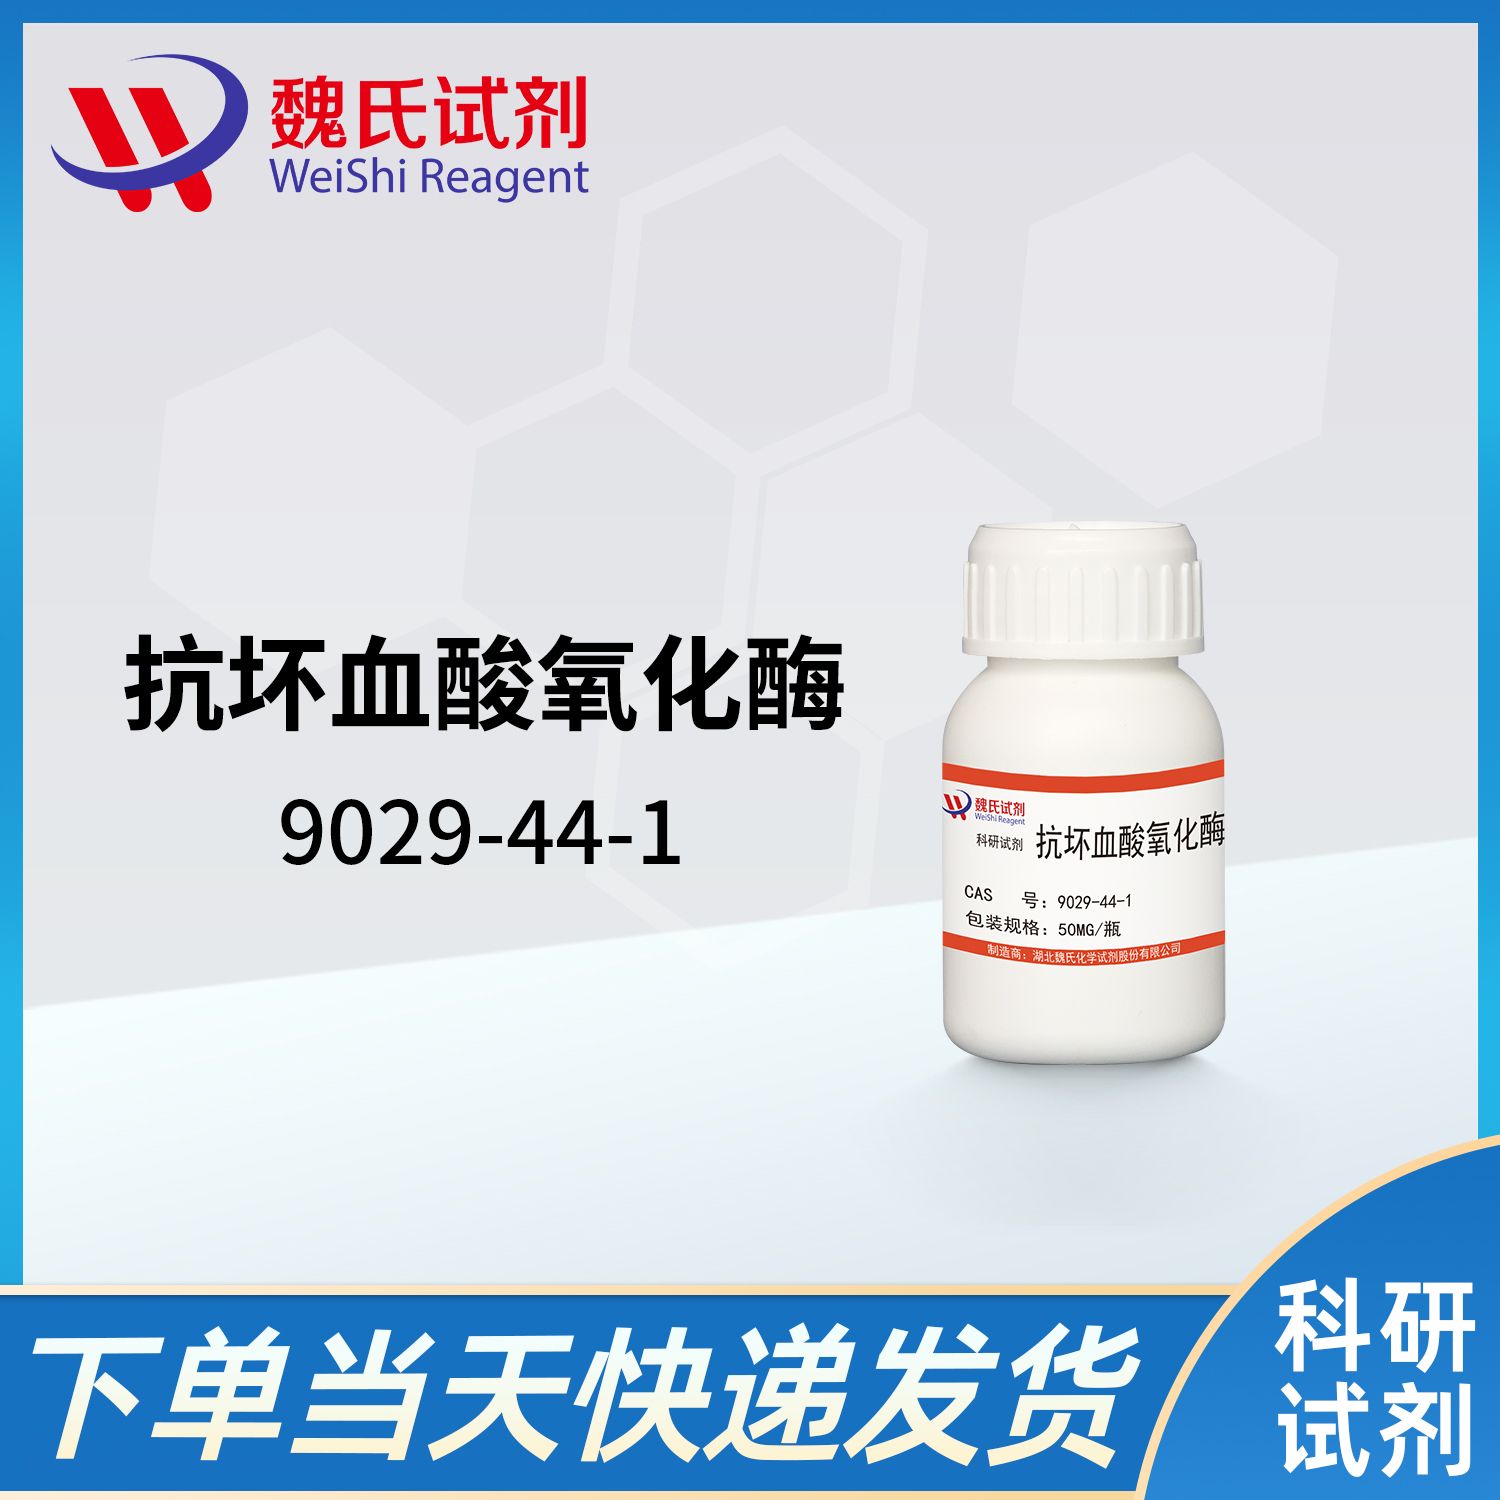 9029-44-1/抗坏血酸氧化酶/ASCORBATE OXIDASE